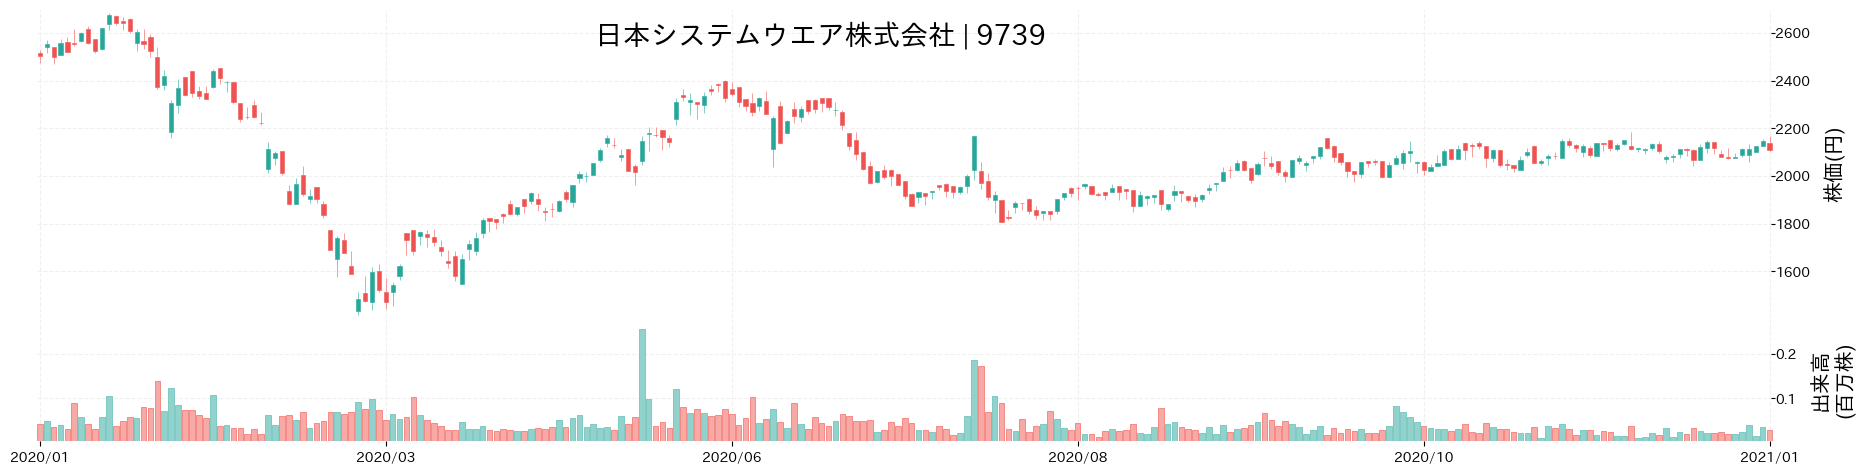 日本システムウエアの株価推移(2020)